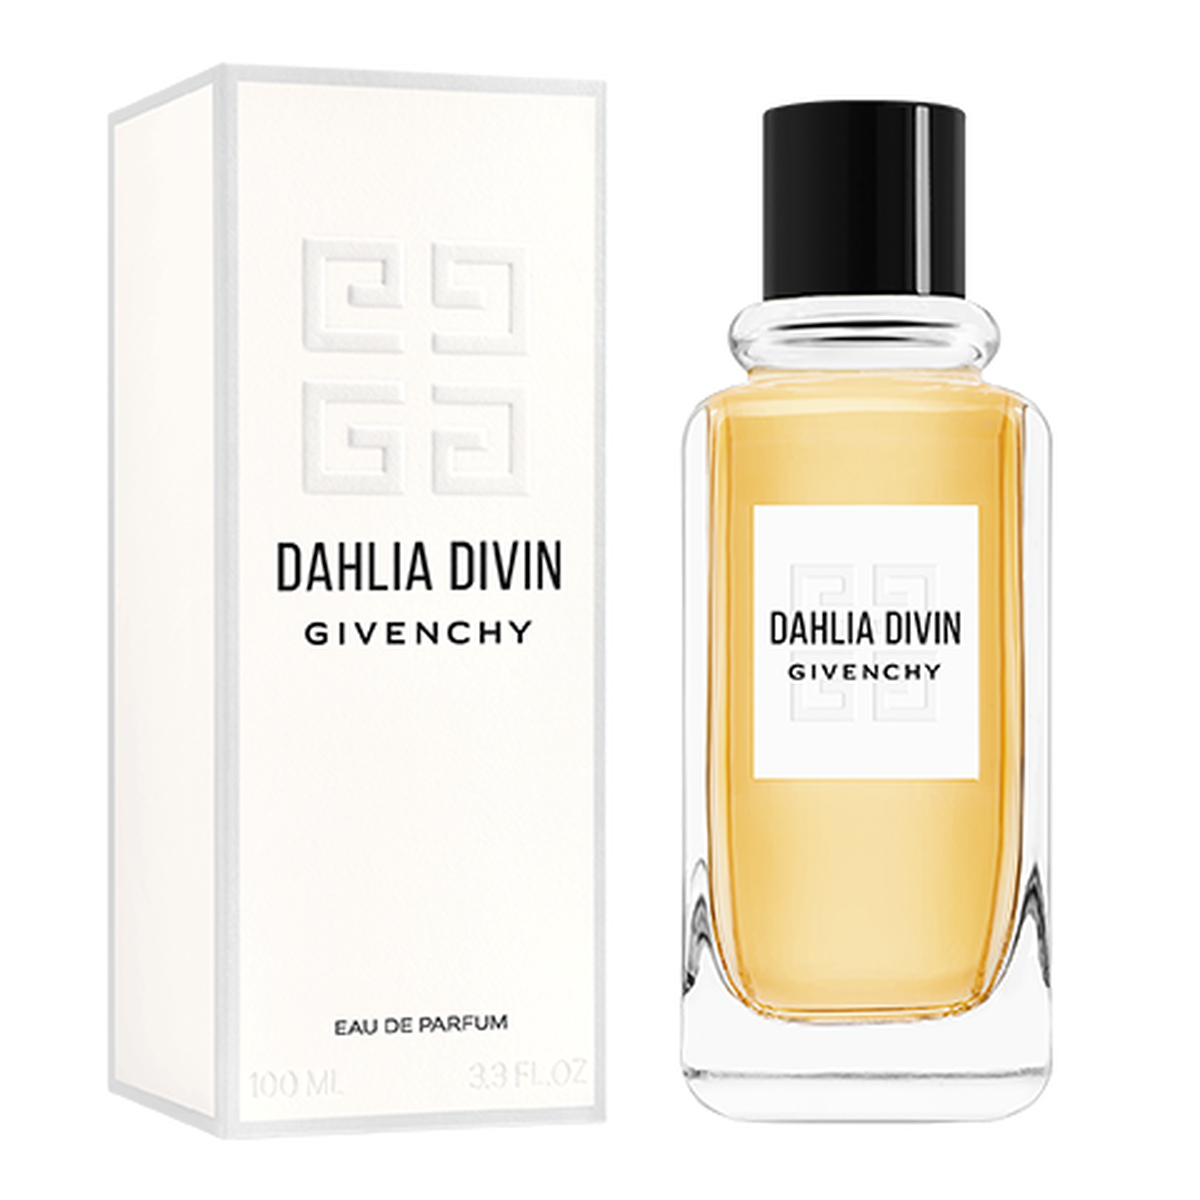 Dahlia Divin - Eau de parfum floral, woody, fruity | Givenchy Beauty